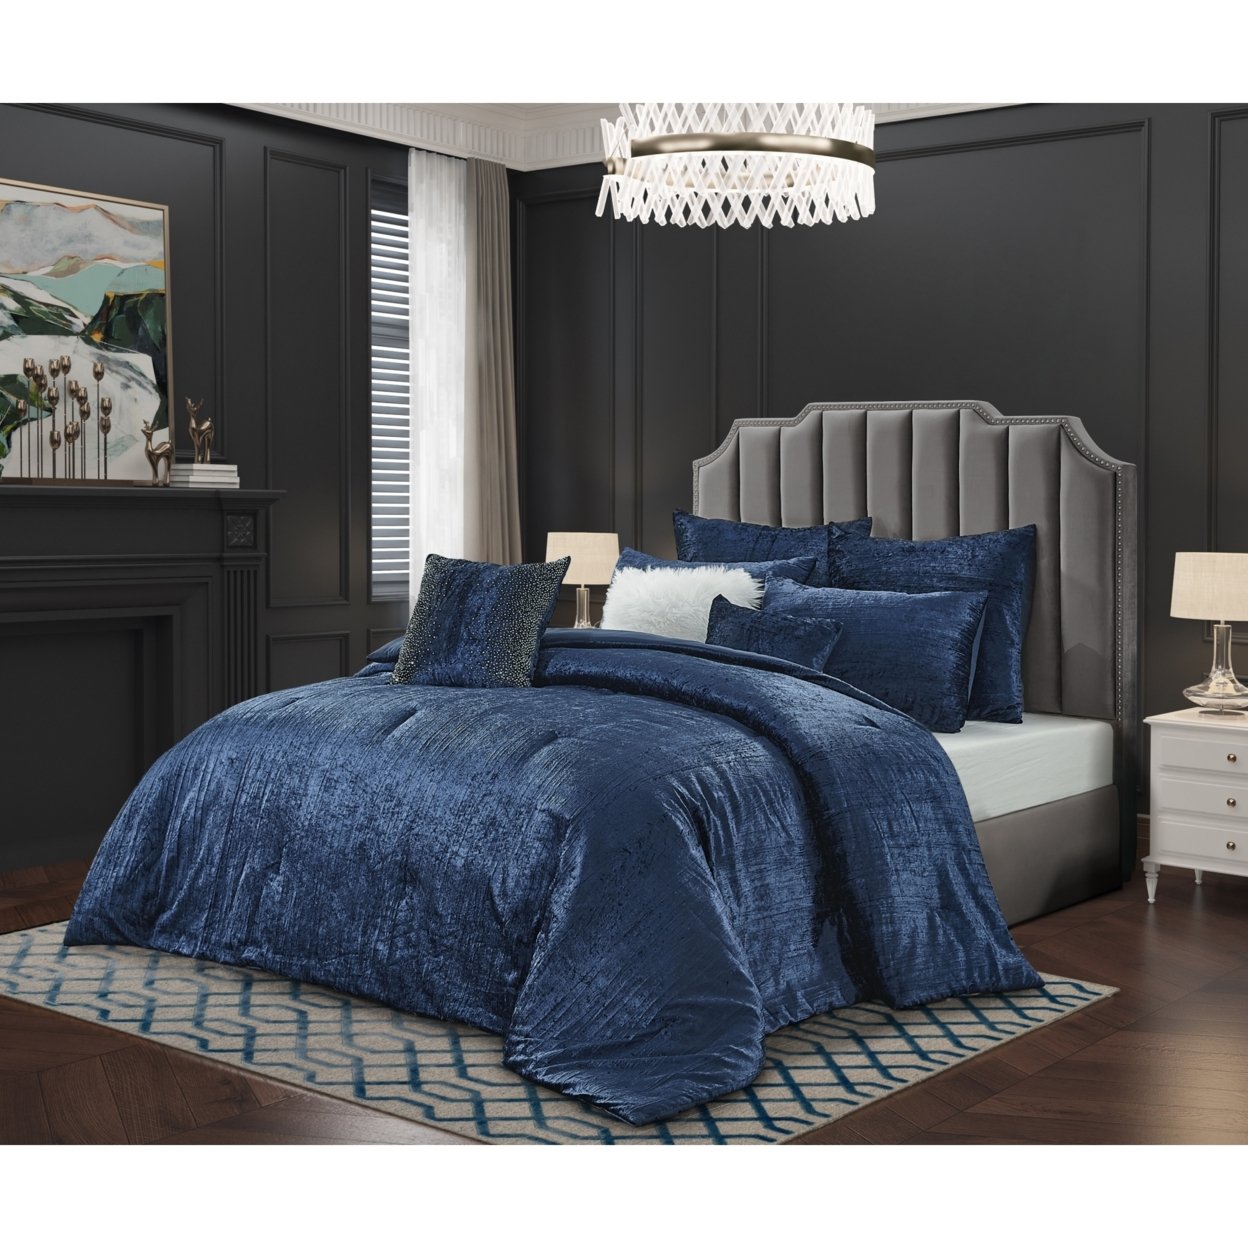 Abella Comforter Set -Crinkle Velvet , Soft and Shiny - navy, full/queen - full/queen navy blue